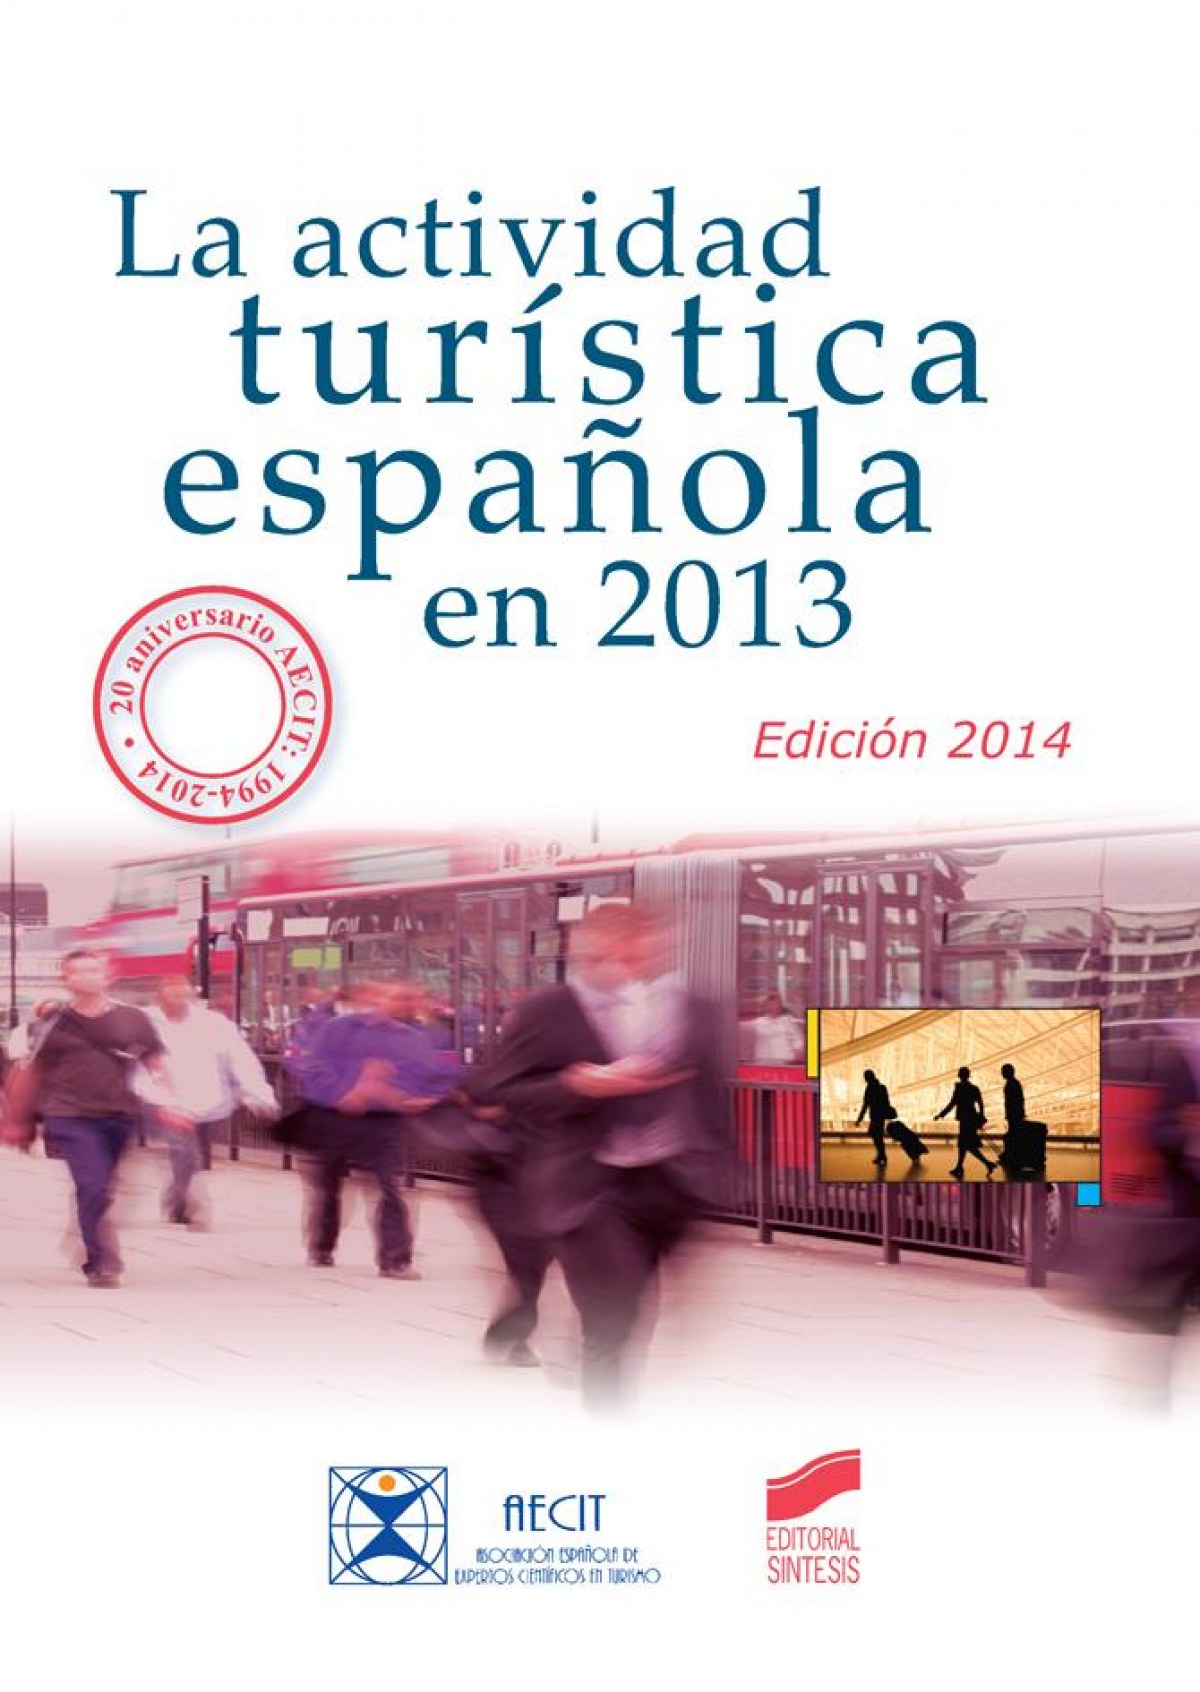 Imagen de portada del libro La actividad turística española en 2013